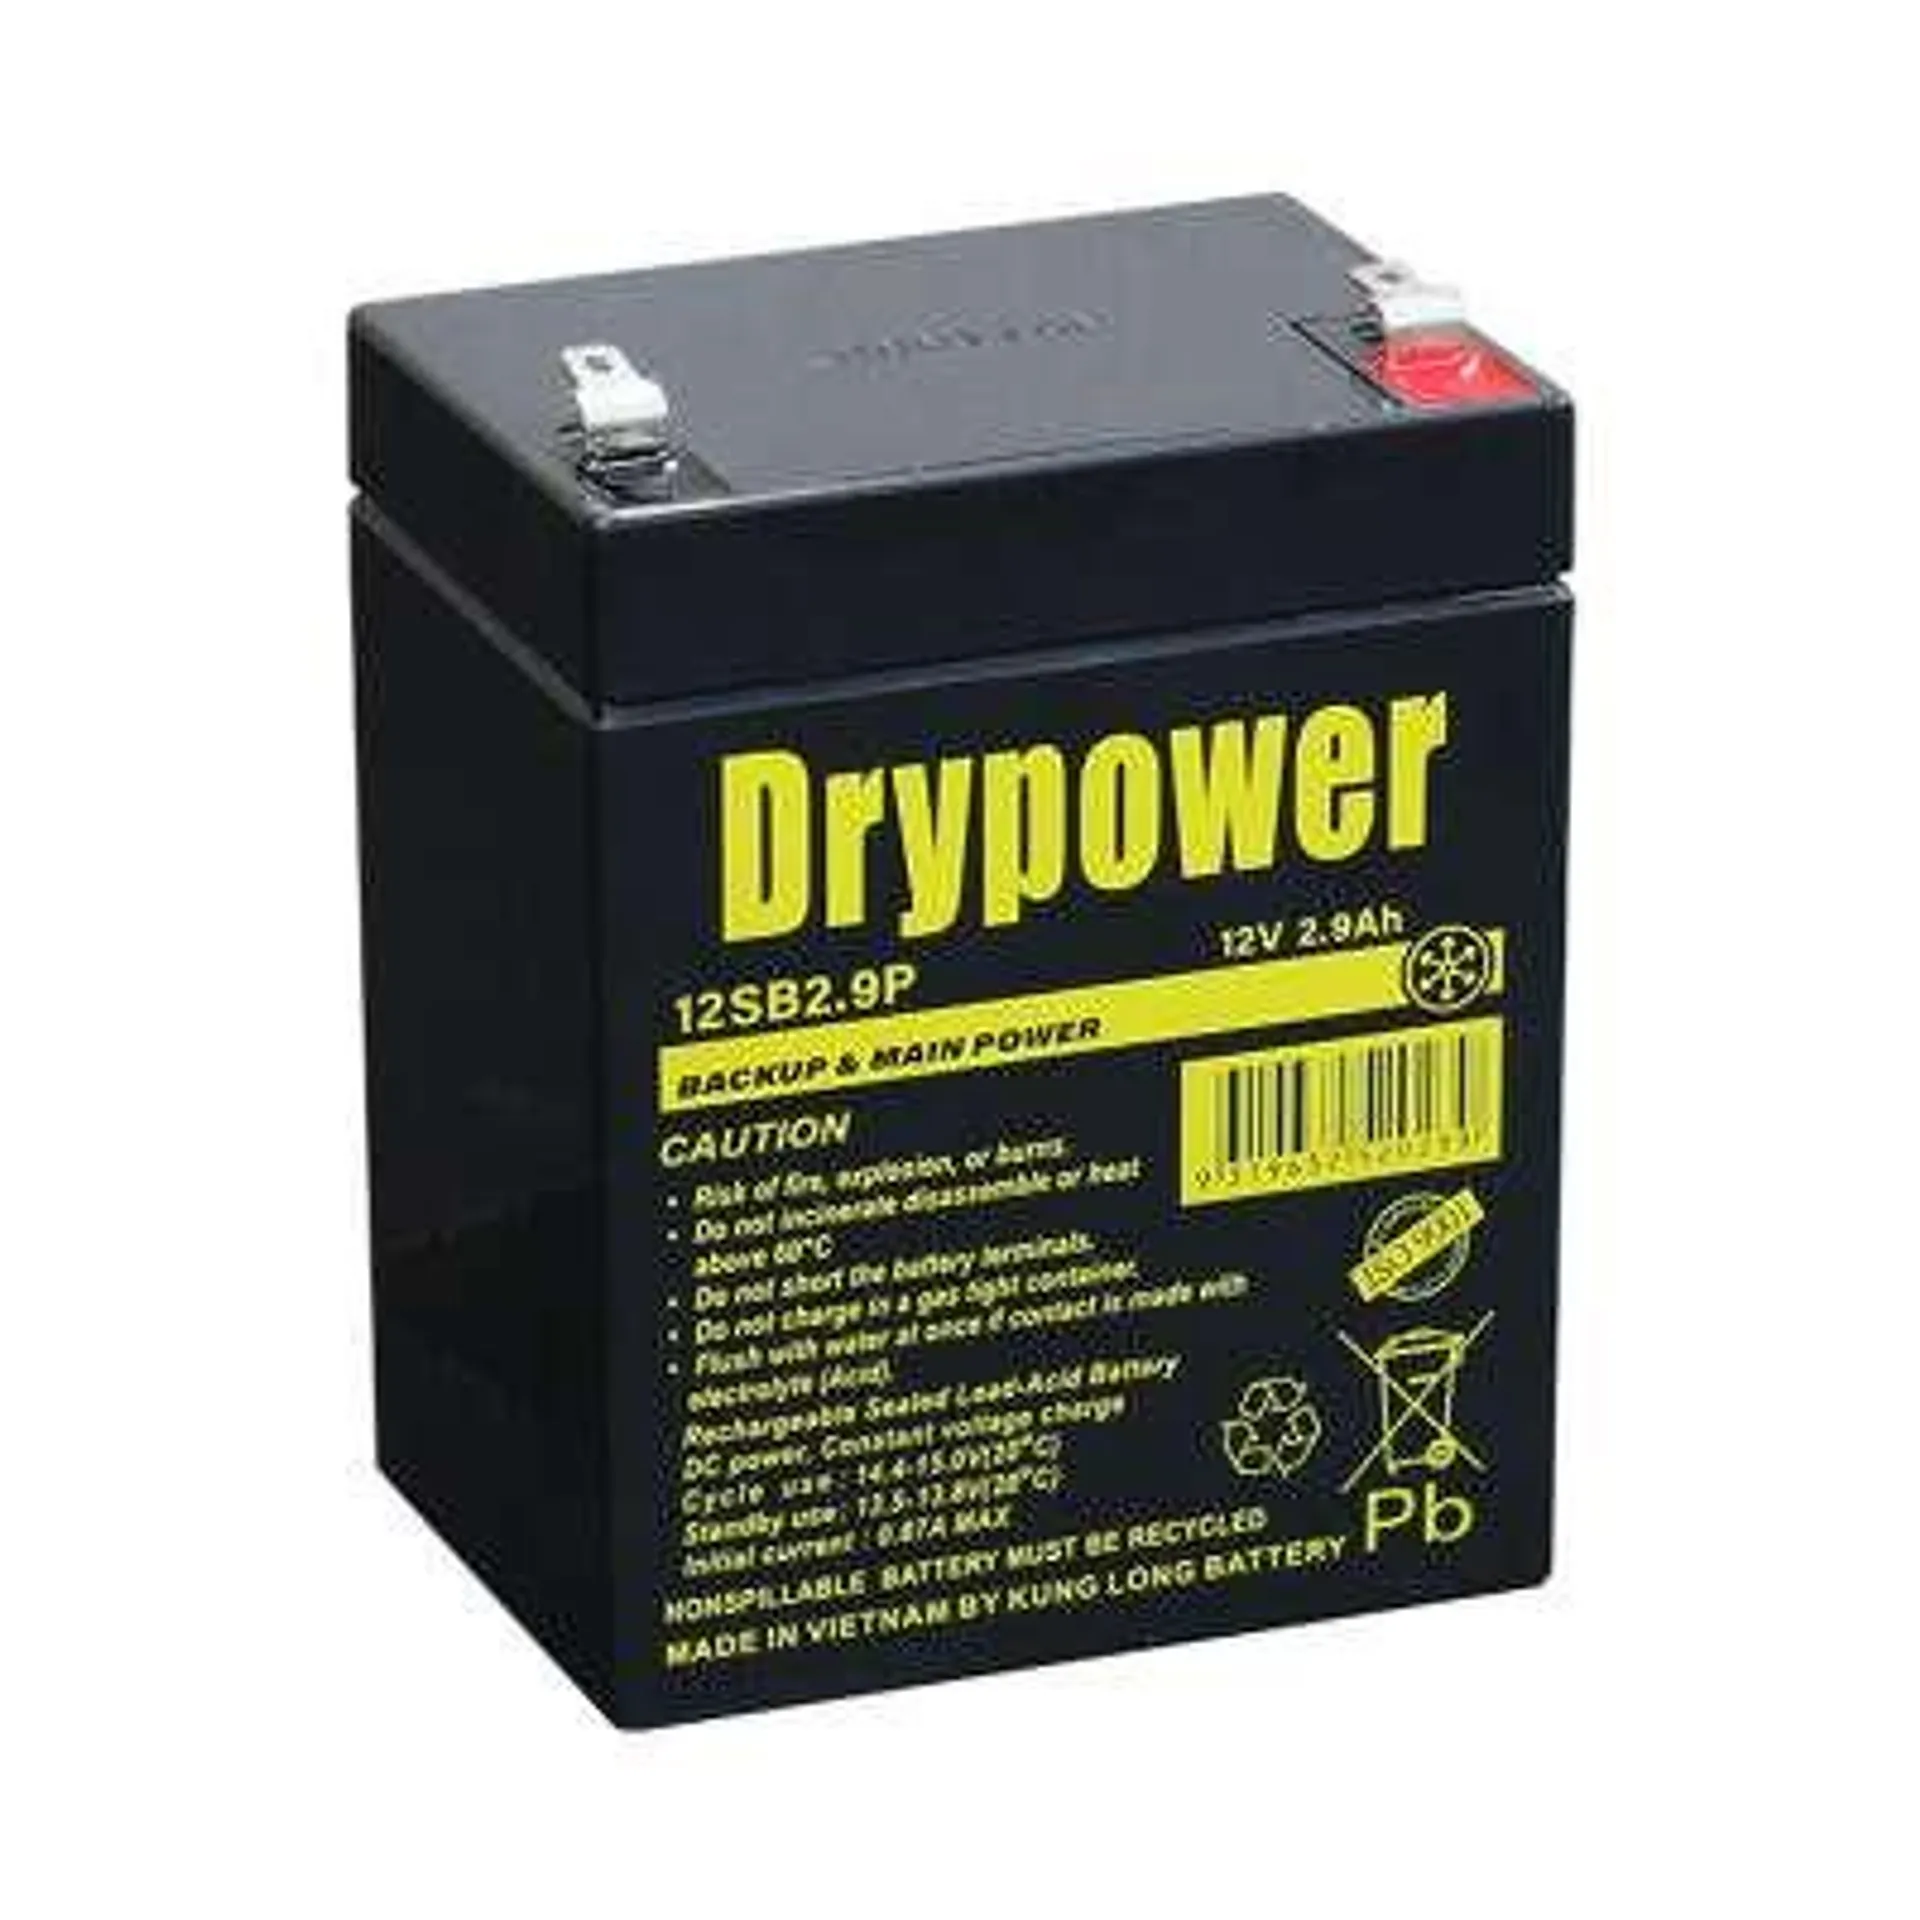 Drypower 12V 2.9Ah SLA Battery